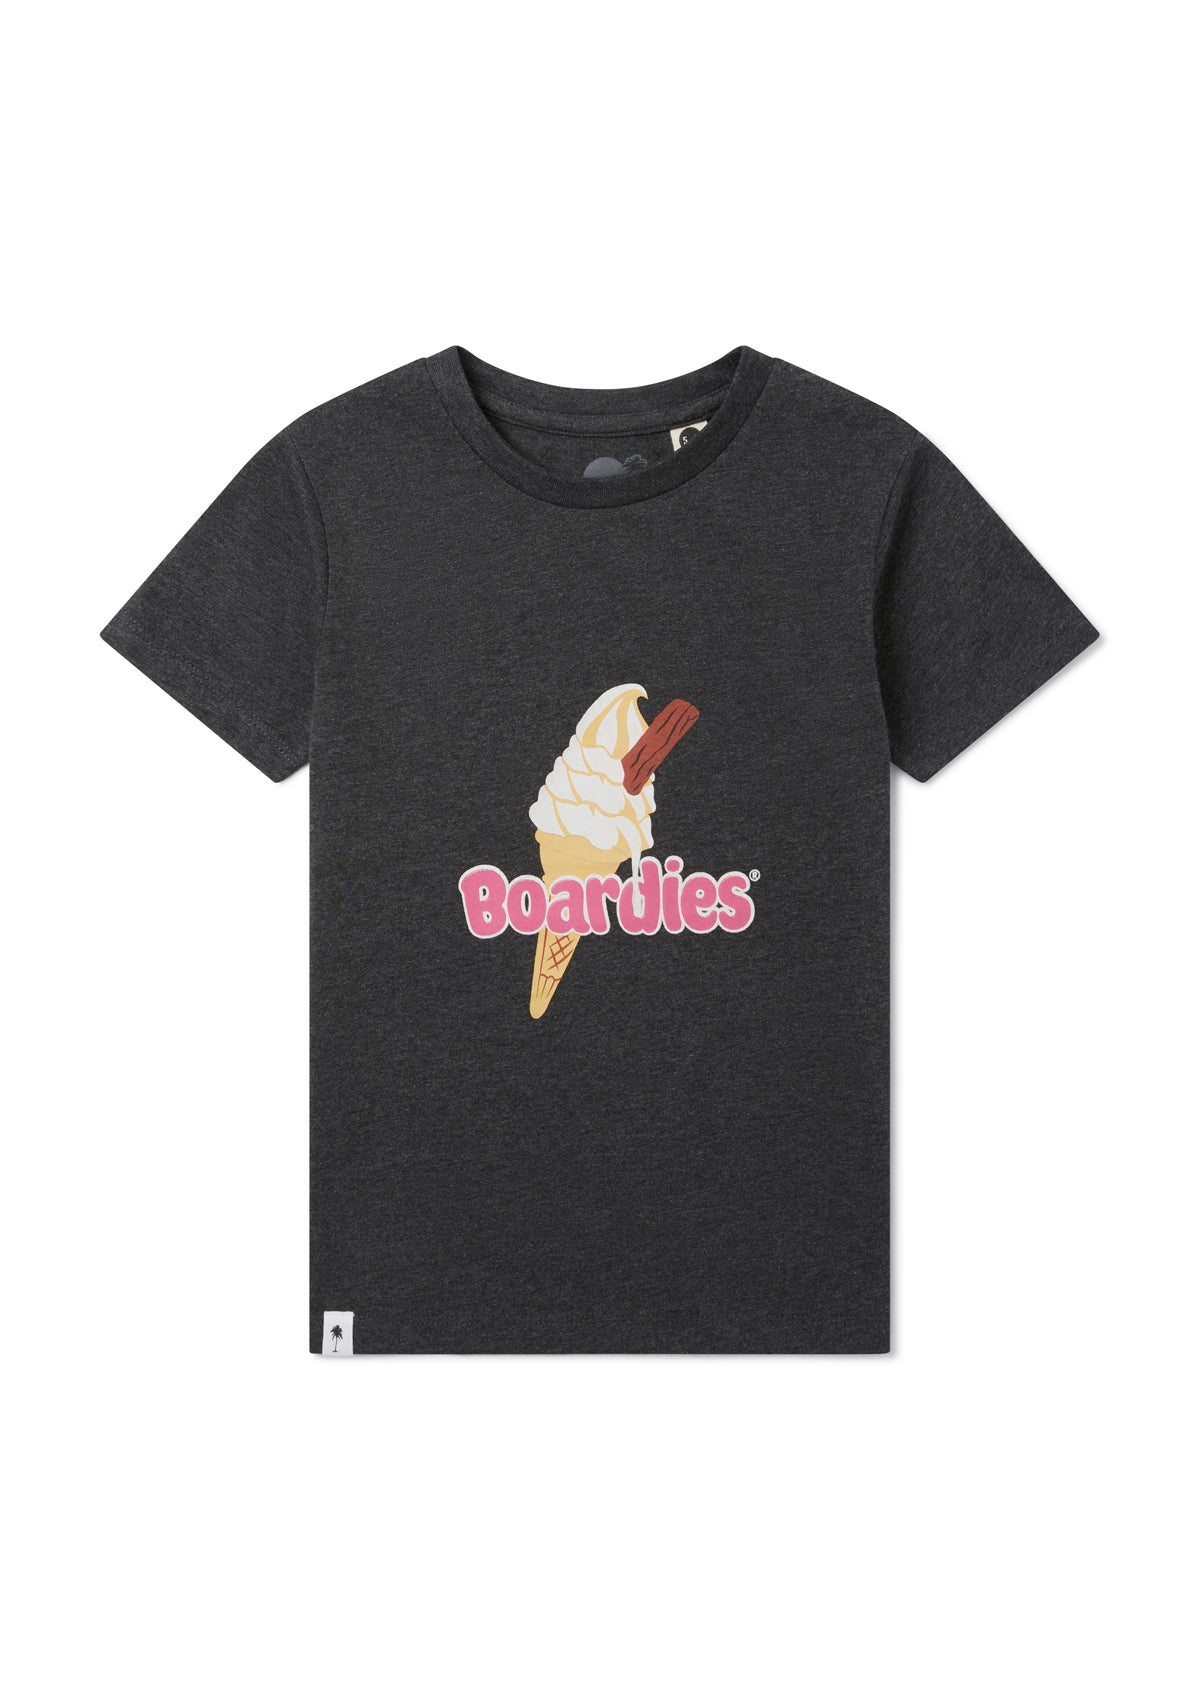 Boardies® Kids Ice Creams T-Shirt